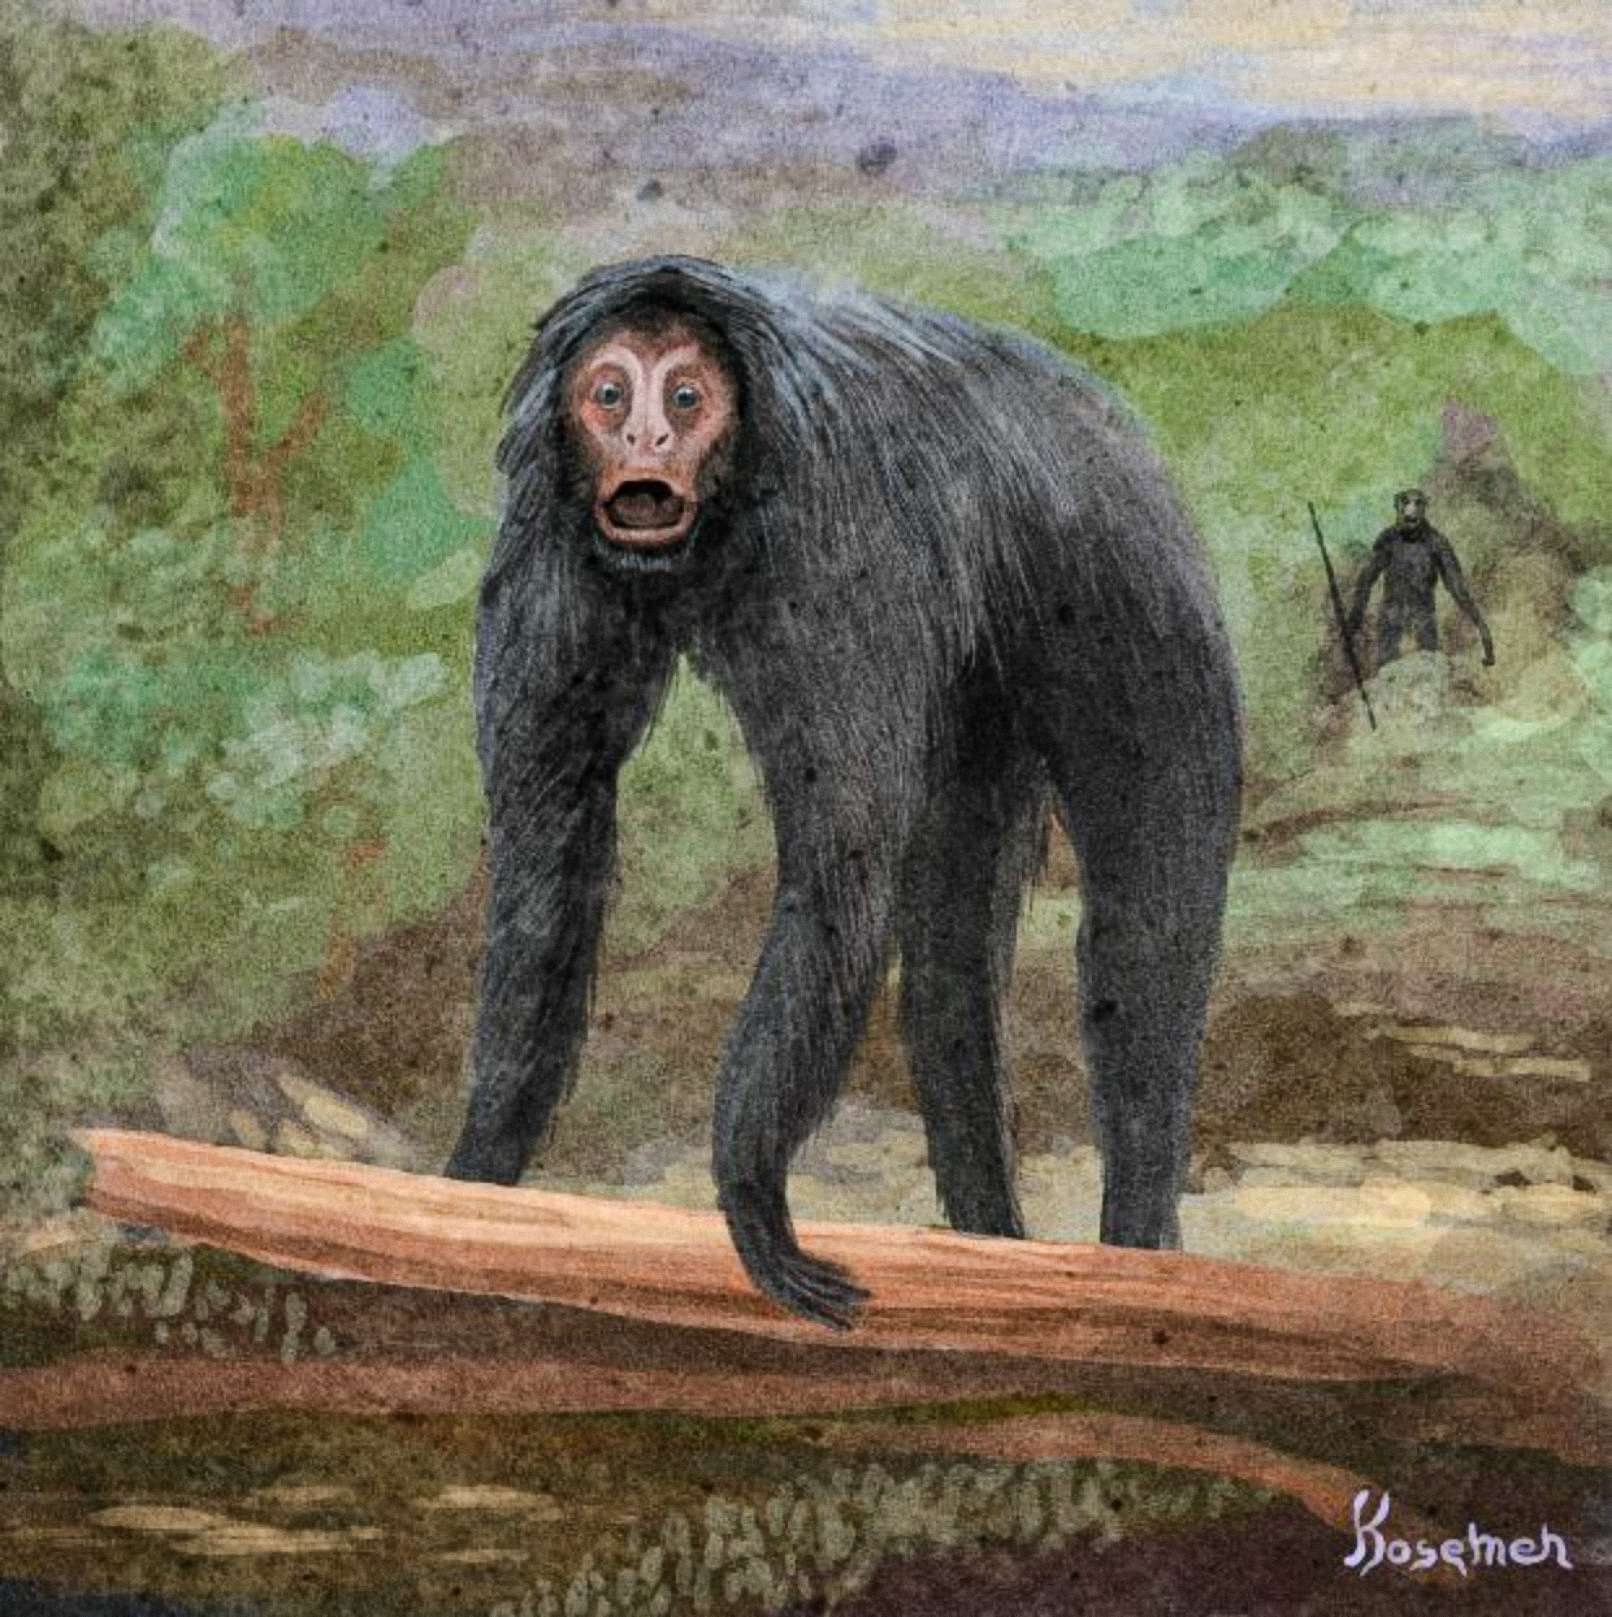 Una interpretación especulativa del evento, el otro primate representado en la parte posterior sosteniendo una herramienta (arte de Kosemen)